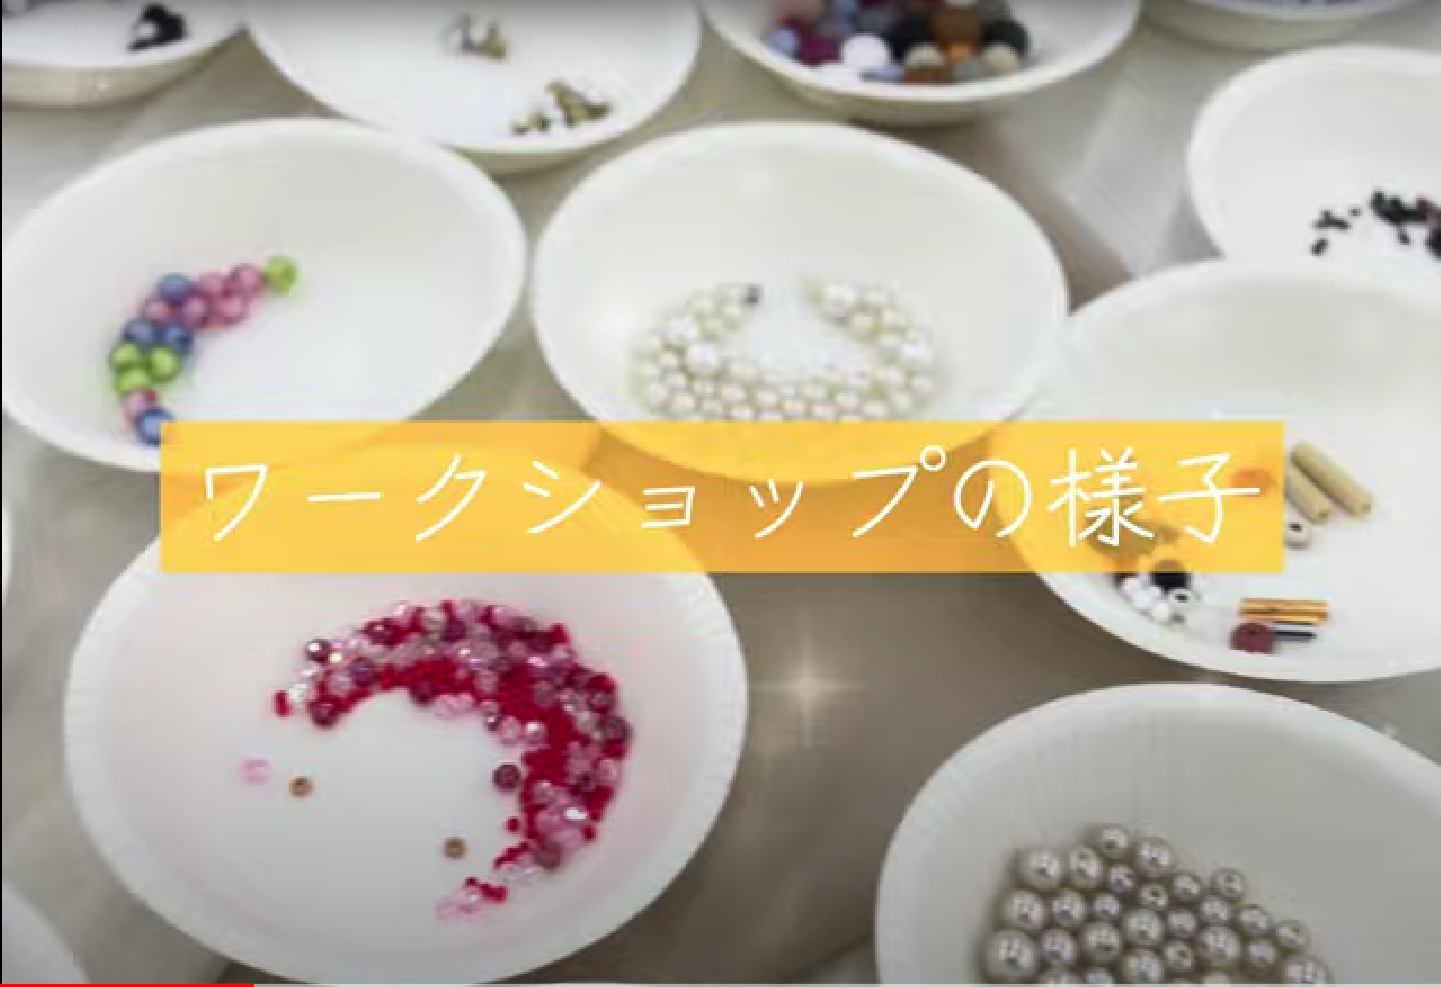 「ある・みる で講師をしています」 関谷愛菜さんがワークショップ“ある・みるcafé”について動画で案内☆ 